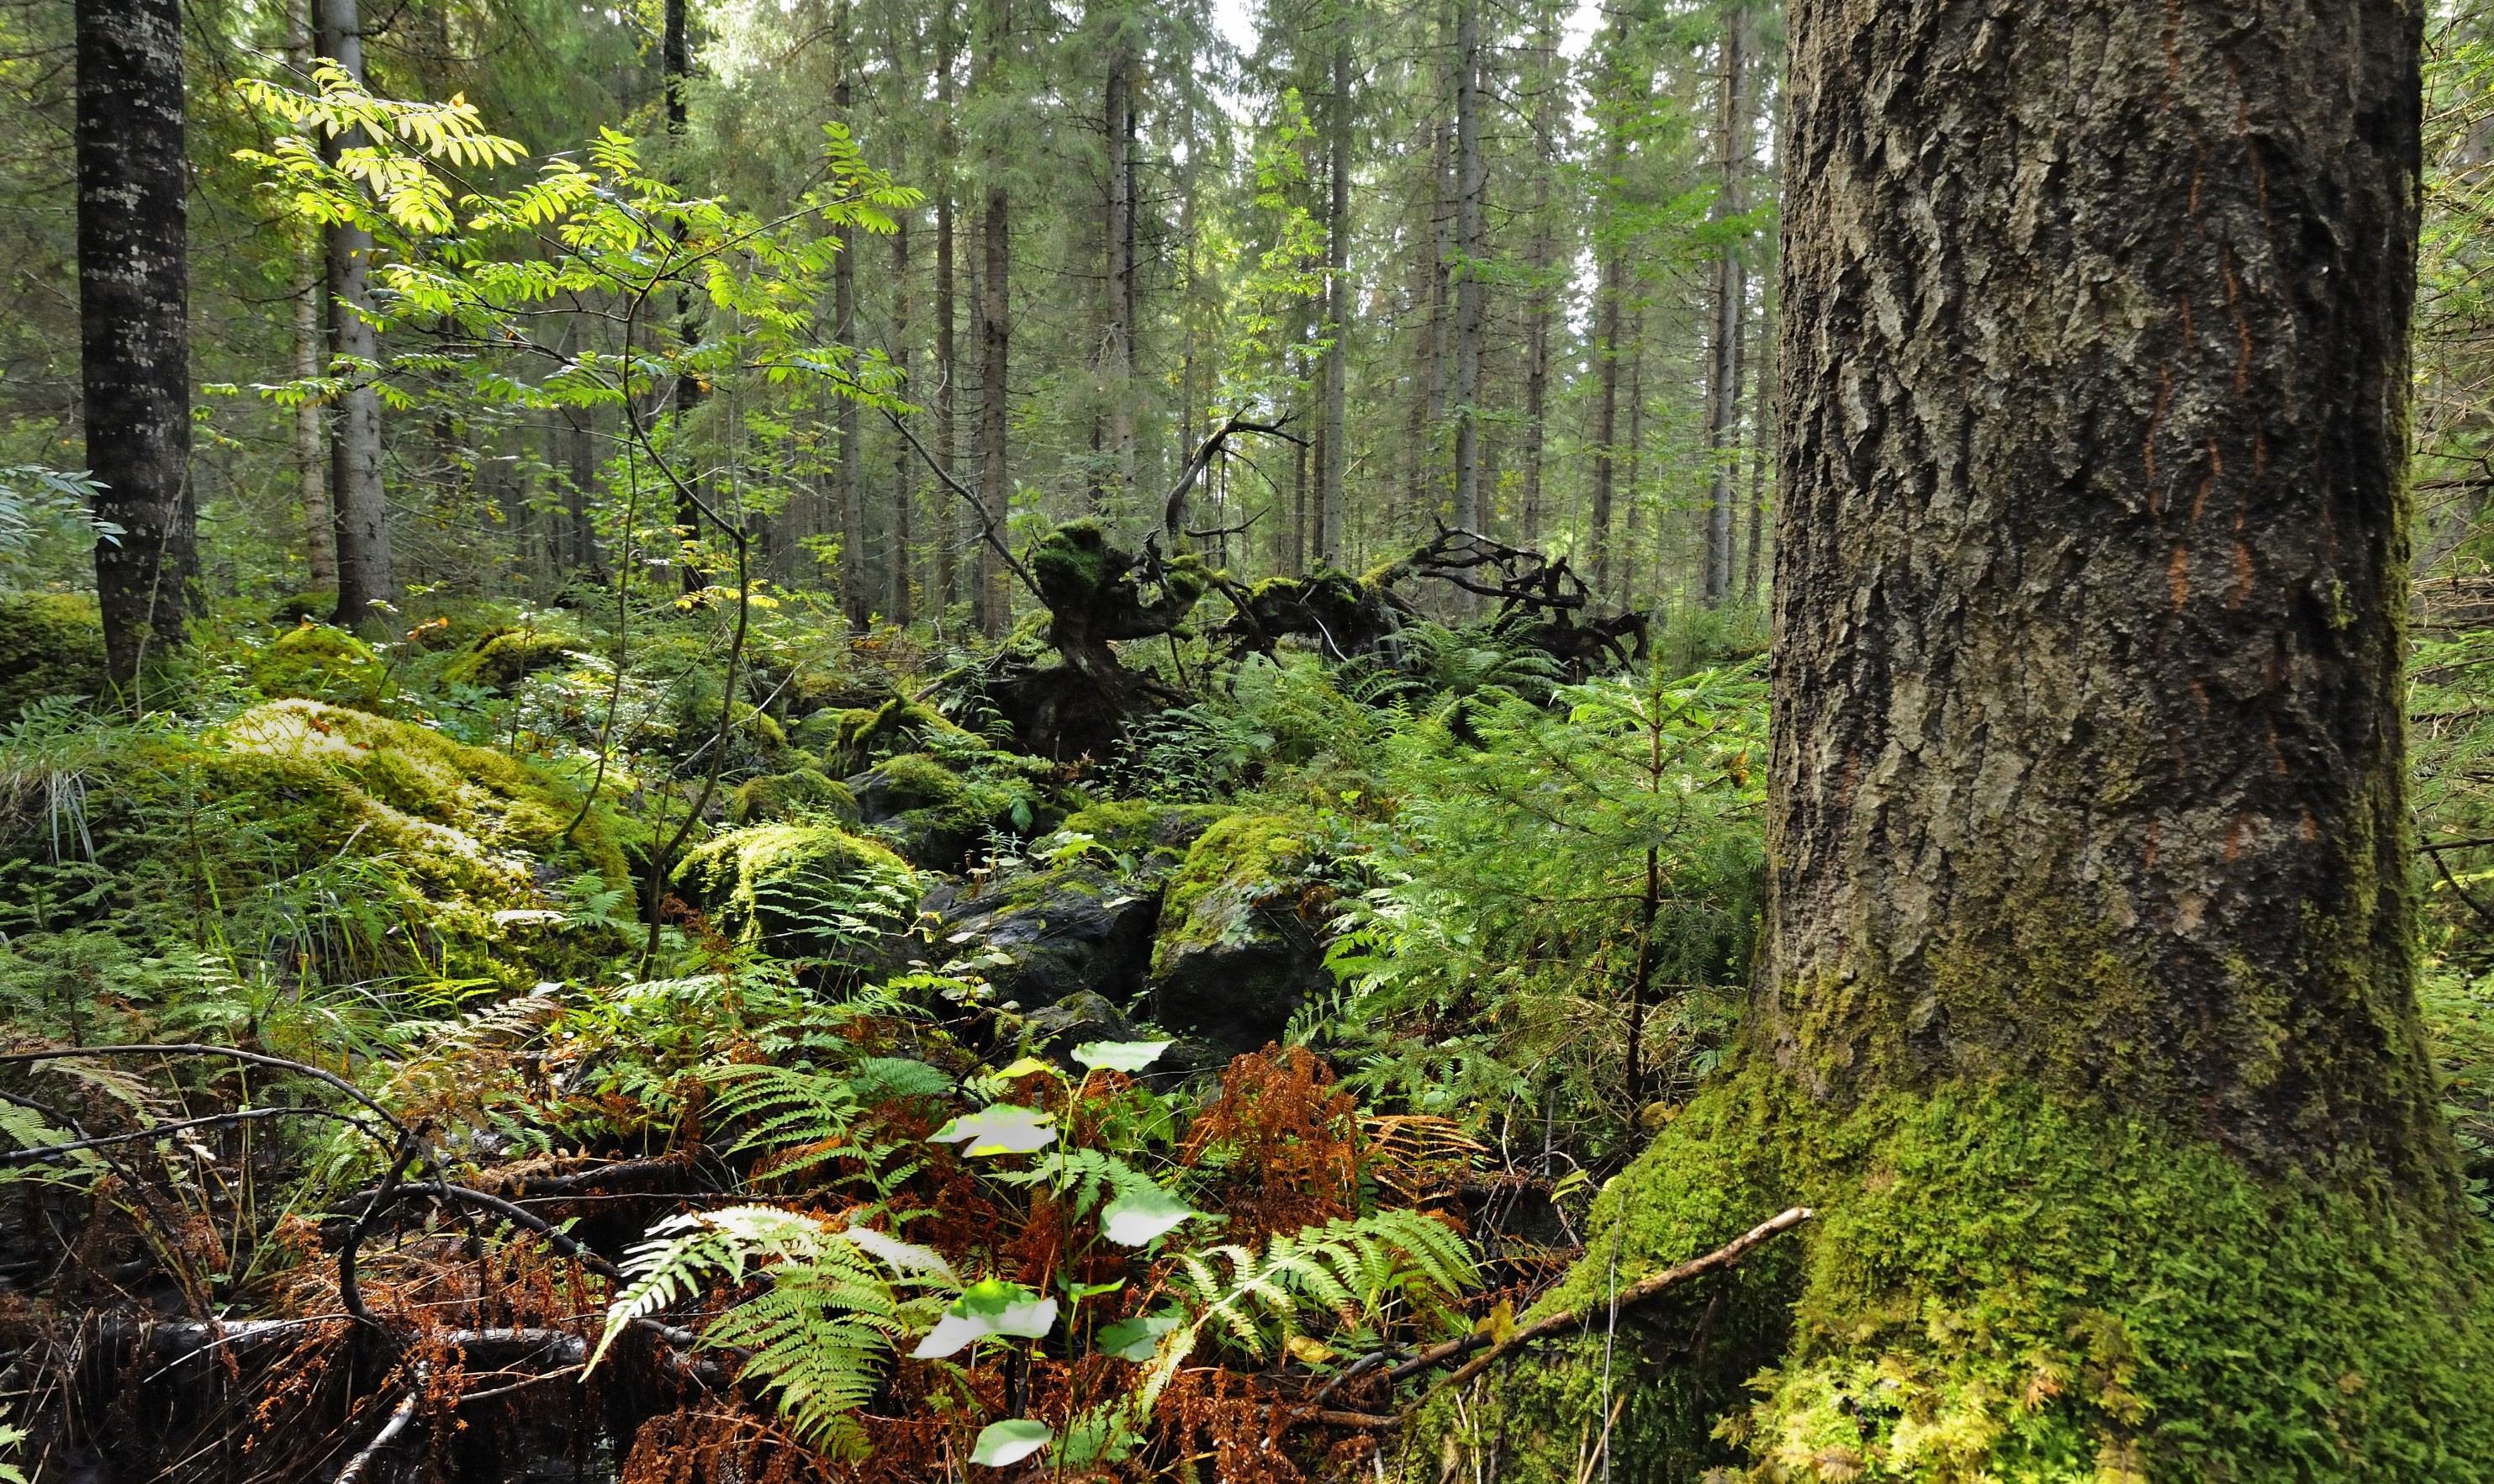 Rehevää, kivikkoista metsänpohjaa, jossa kasvaa muun muassa saniaisia. Kuvan oikeassa laidassa järeä haavanrunko. Taustalla kuusivaltaista metsää ja kaatuneen puun pystyssä oleva juurakko.